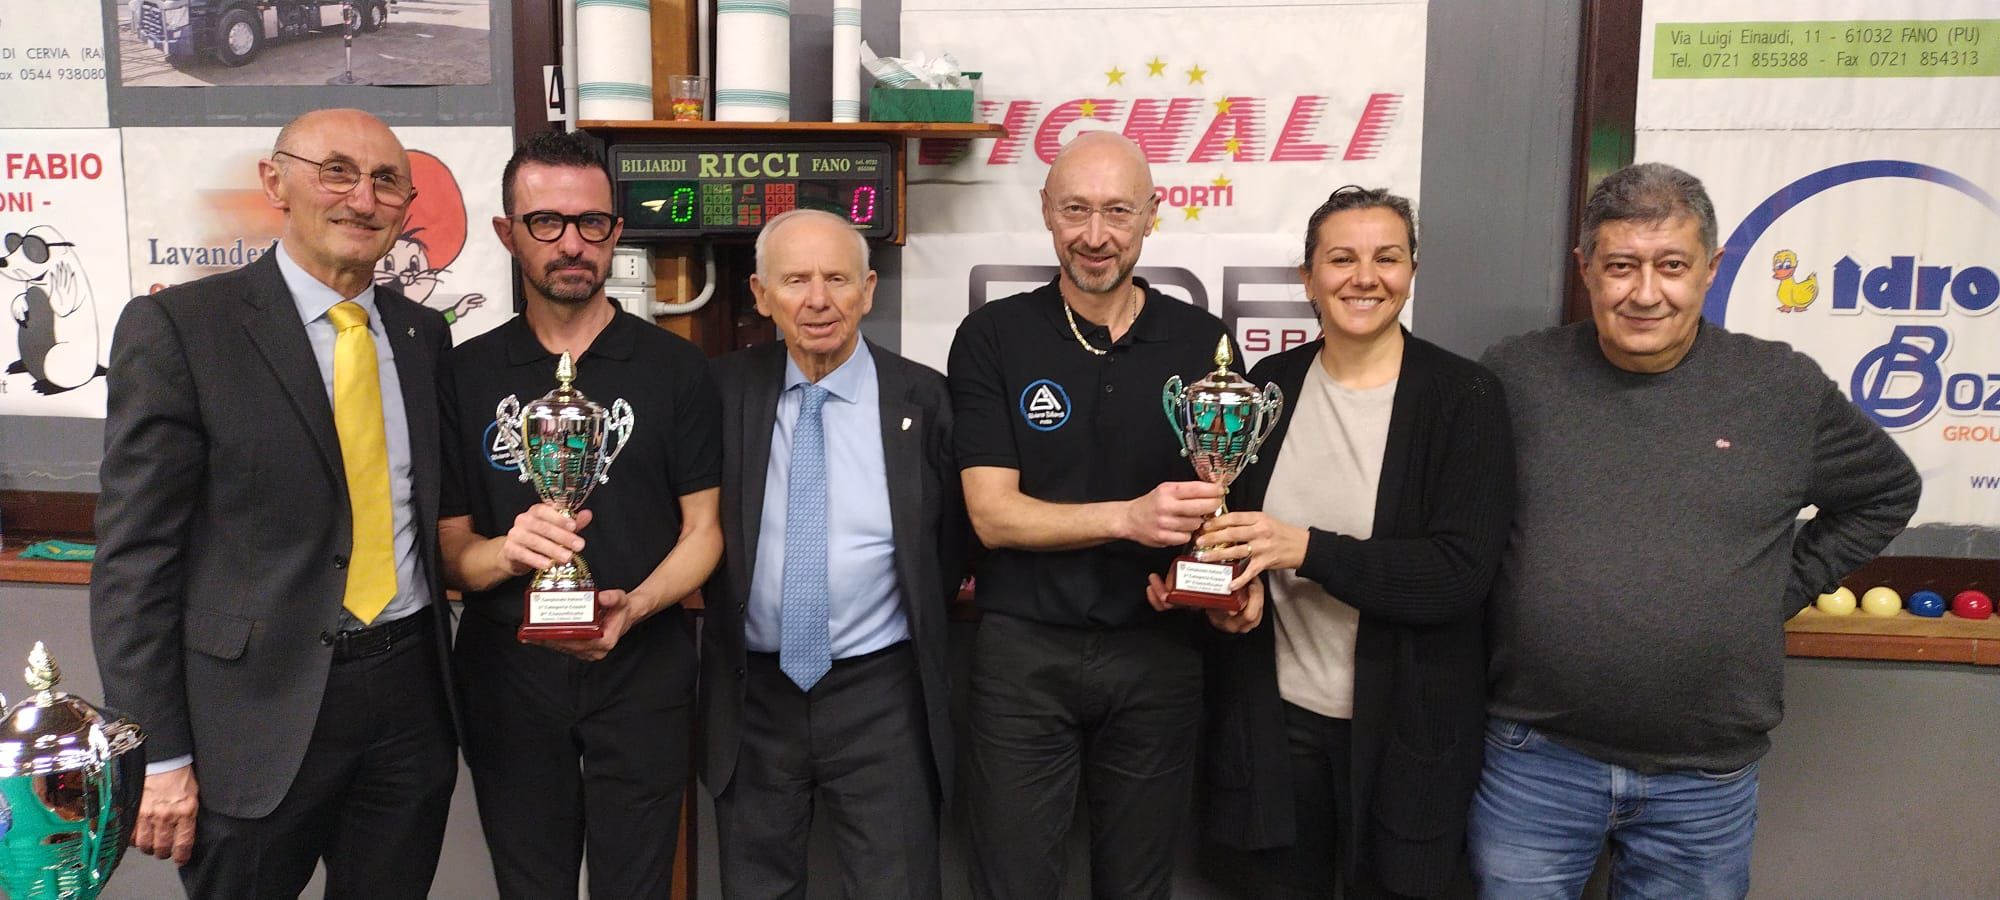 Morini e Sandoni secondi a Faenza per il secondo anno consecutivo